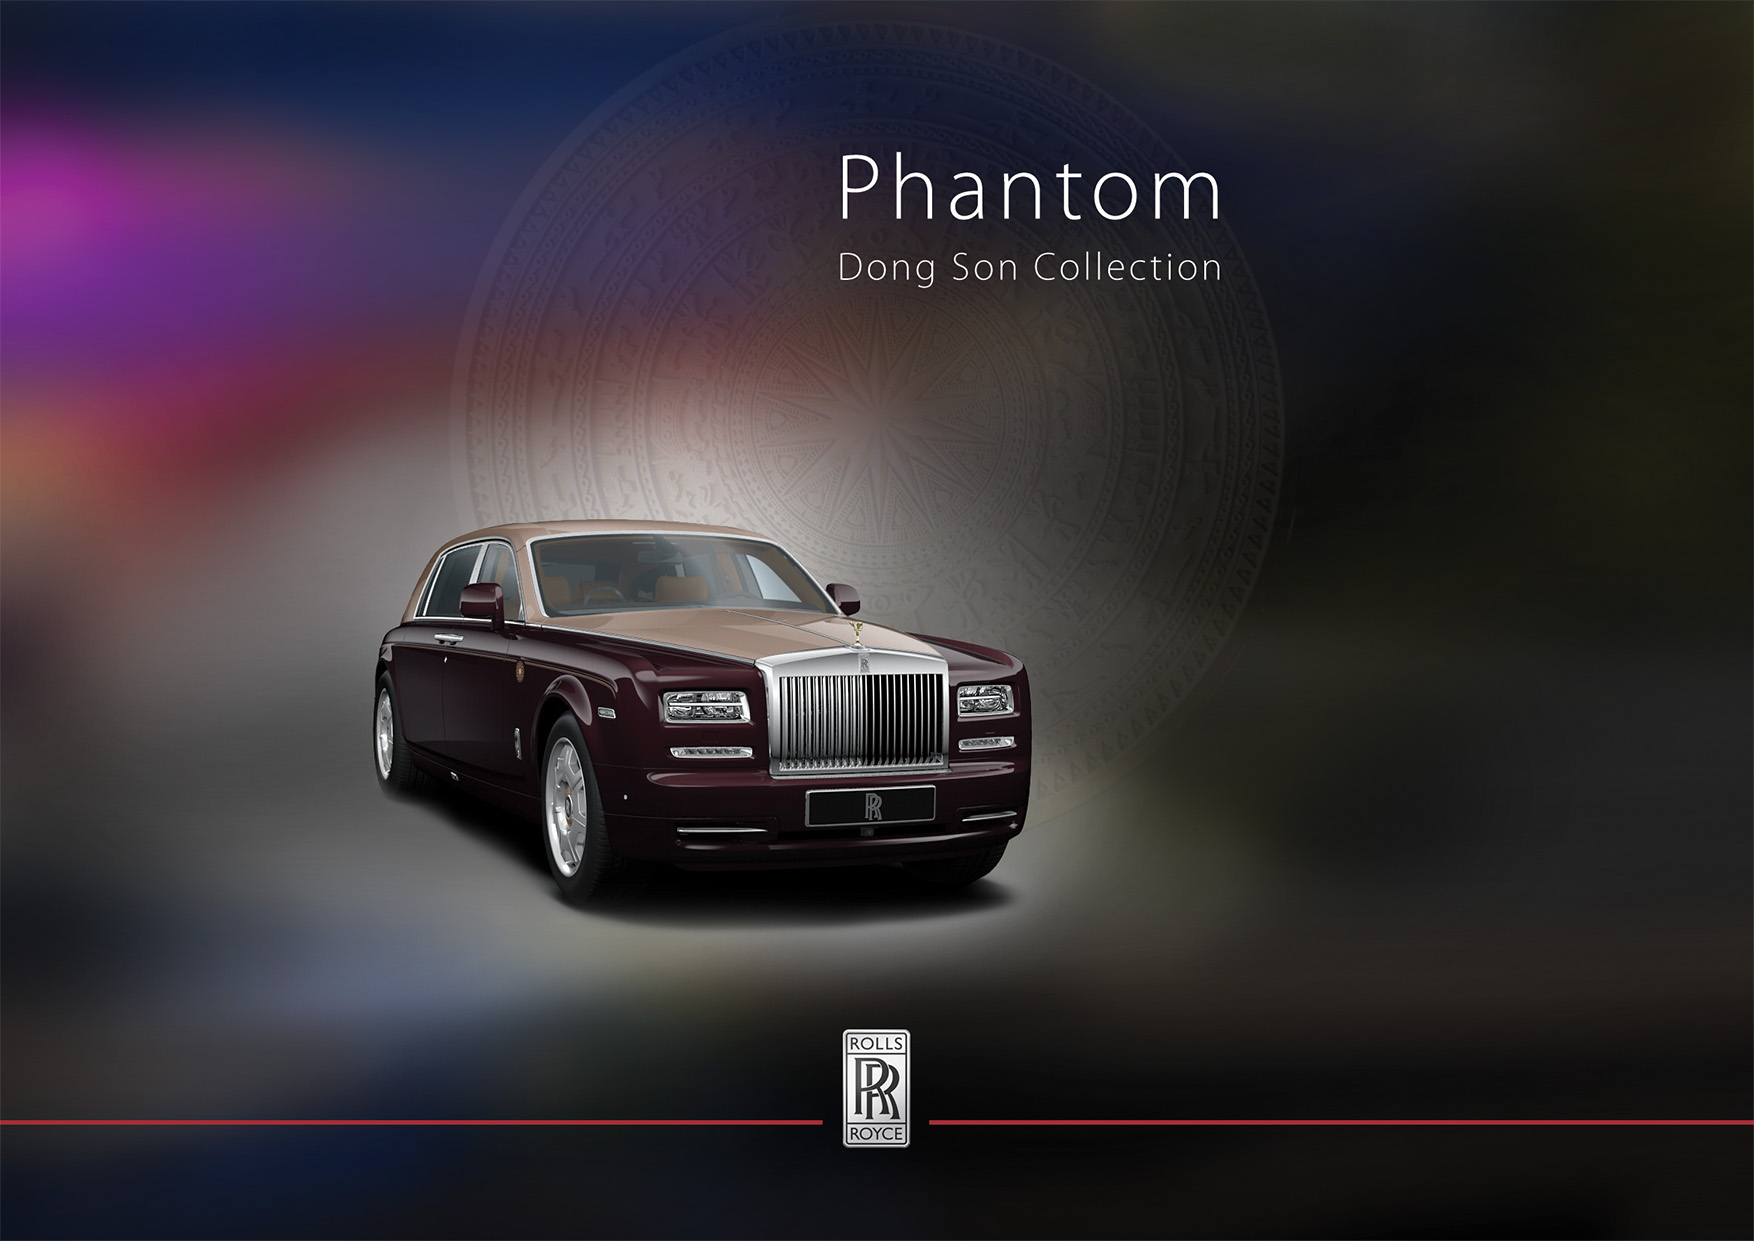 RollsRoyce giới thiệu xe Phantom phiên bản Rồng Dân trí